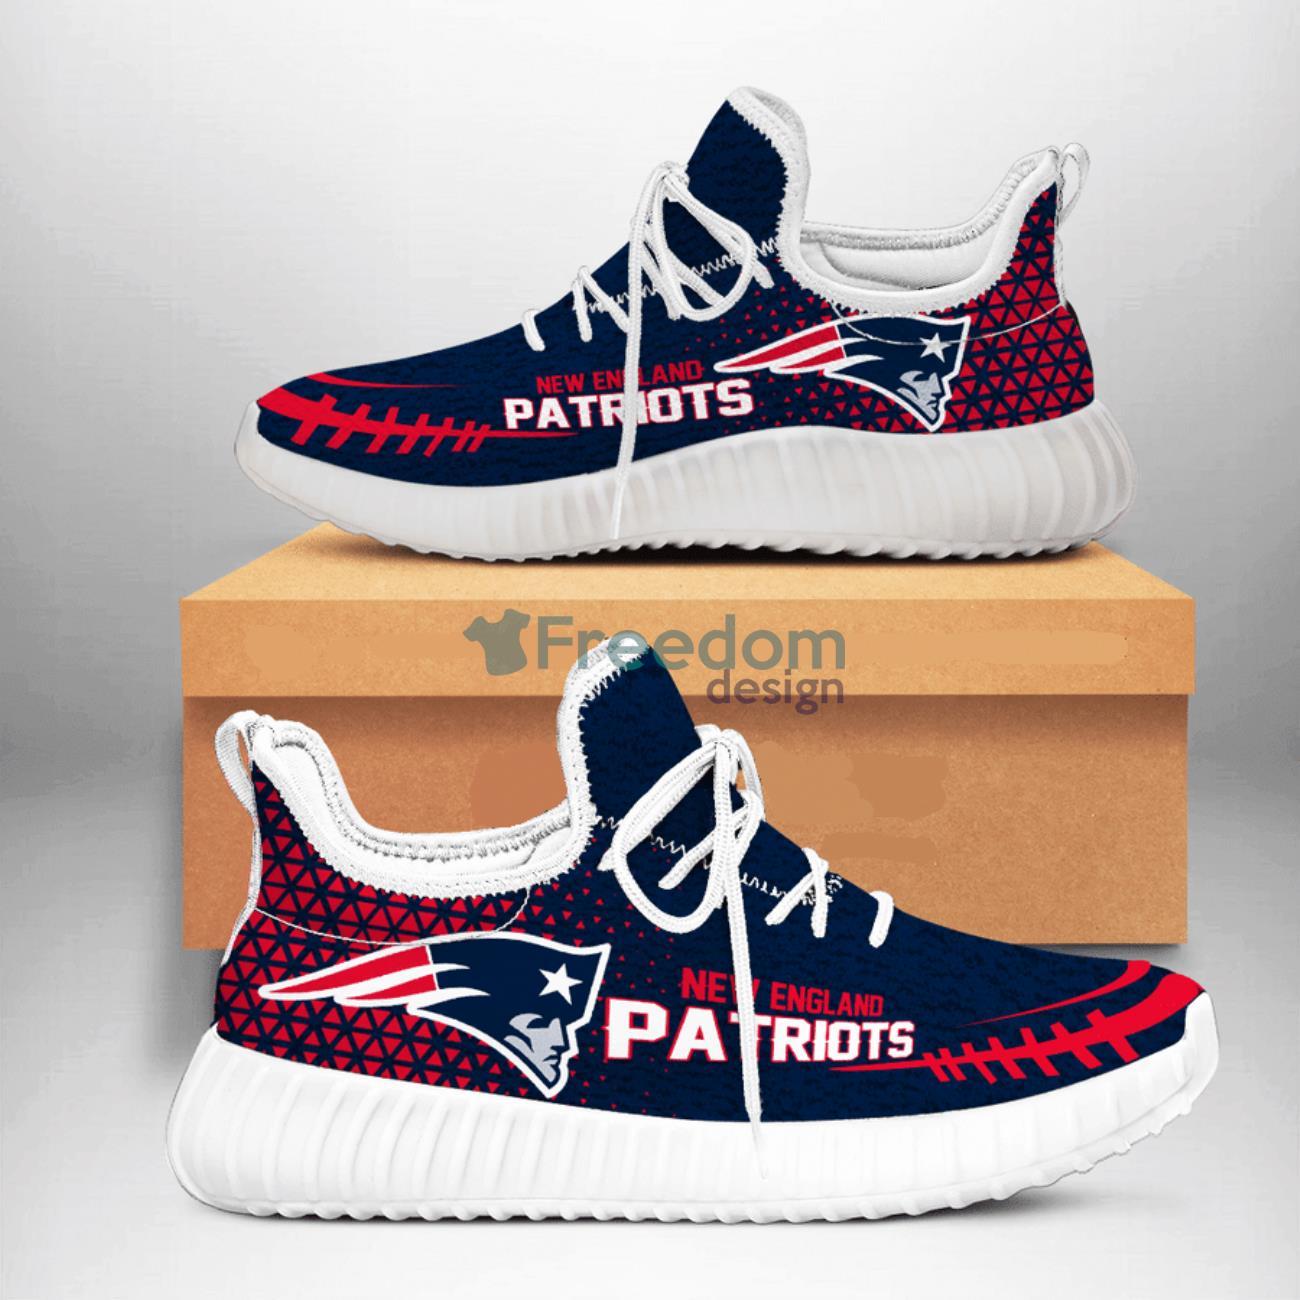 New England Patriots Team Reze Shoes For Fans